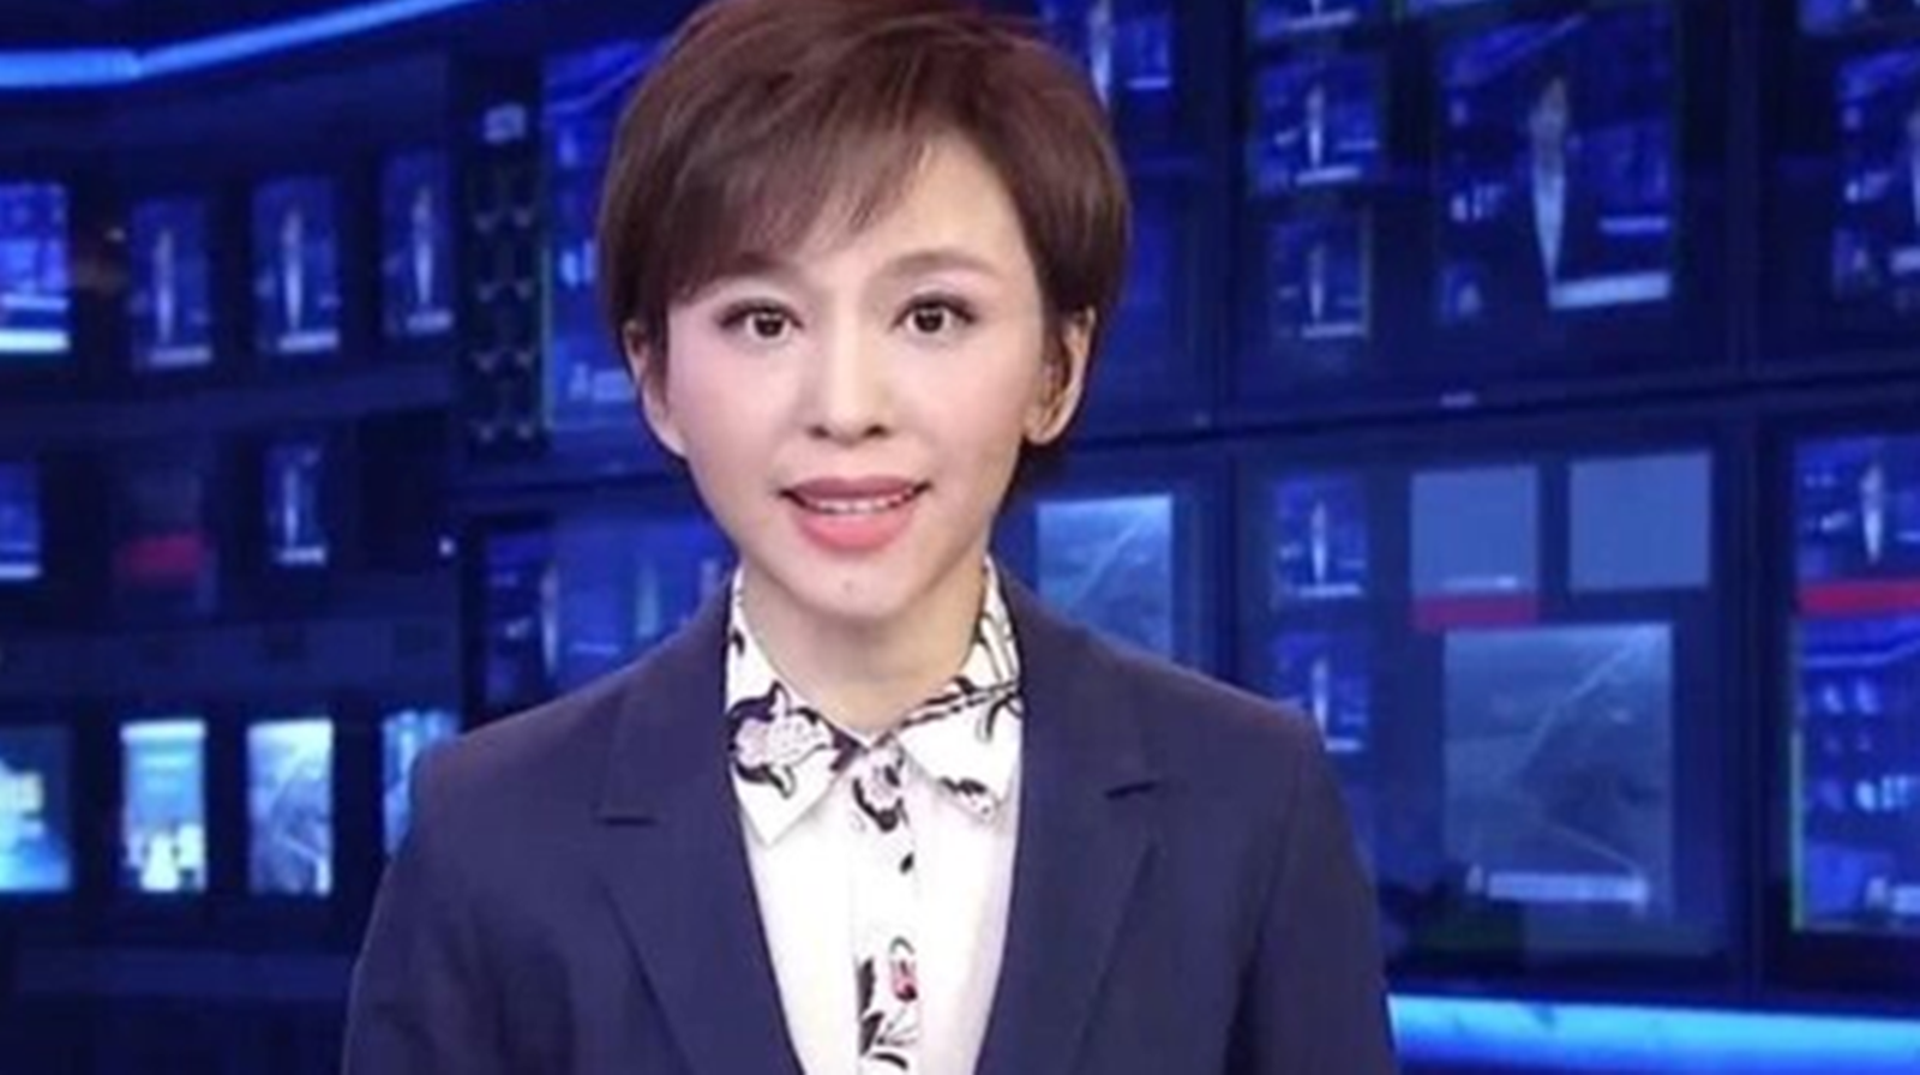 消失 180多天中国央视女主持欧阳夏丹陷负面丑闻 图 多维新闻 中国